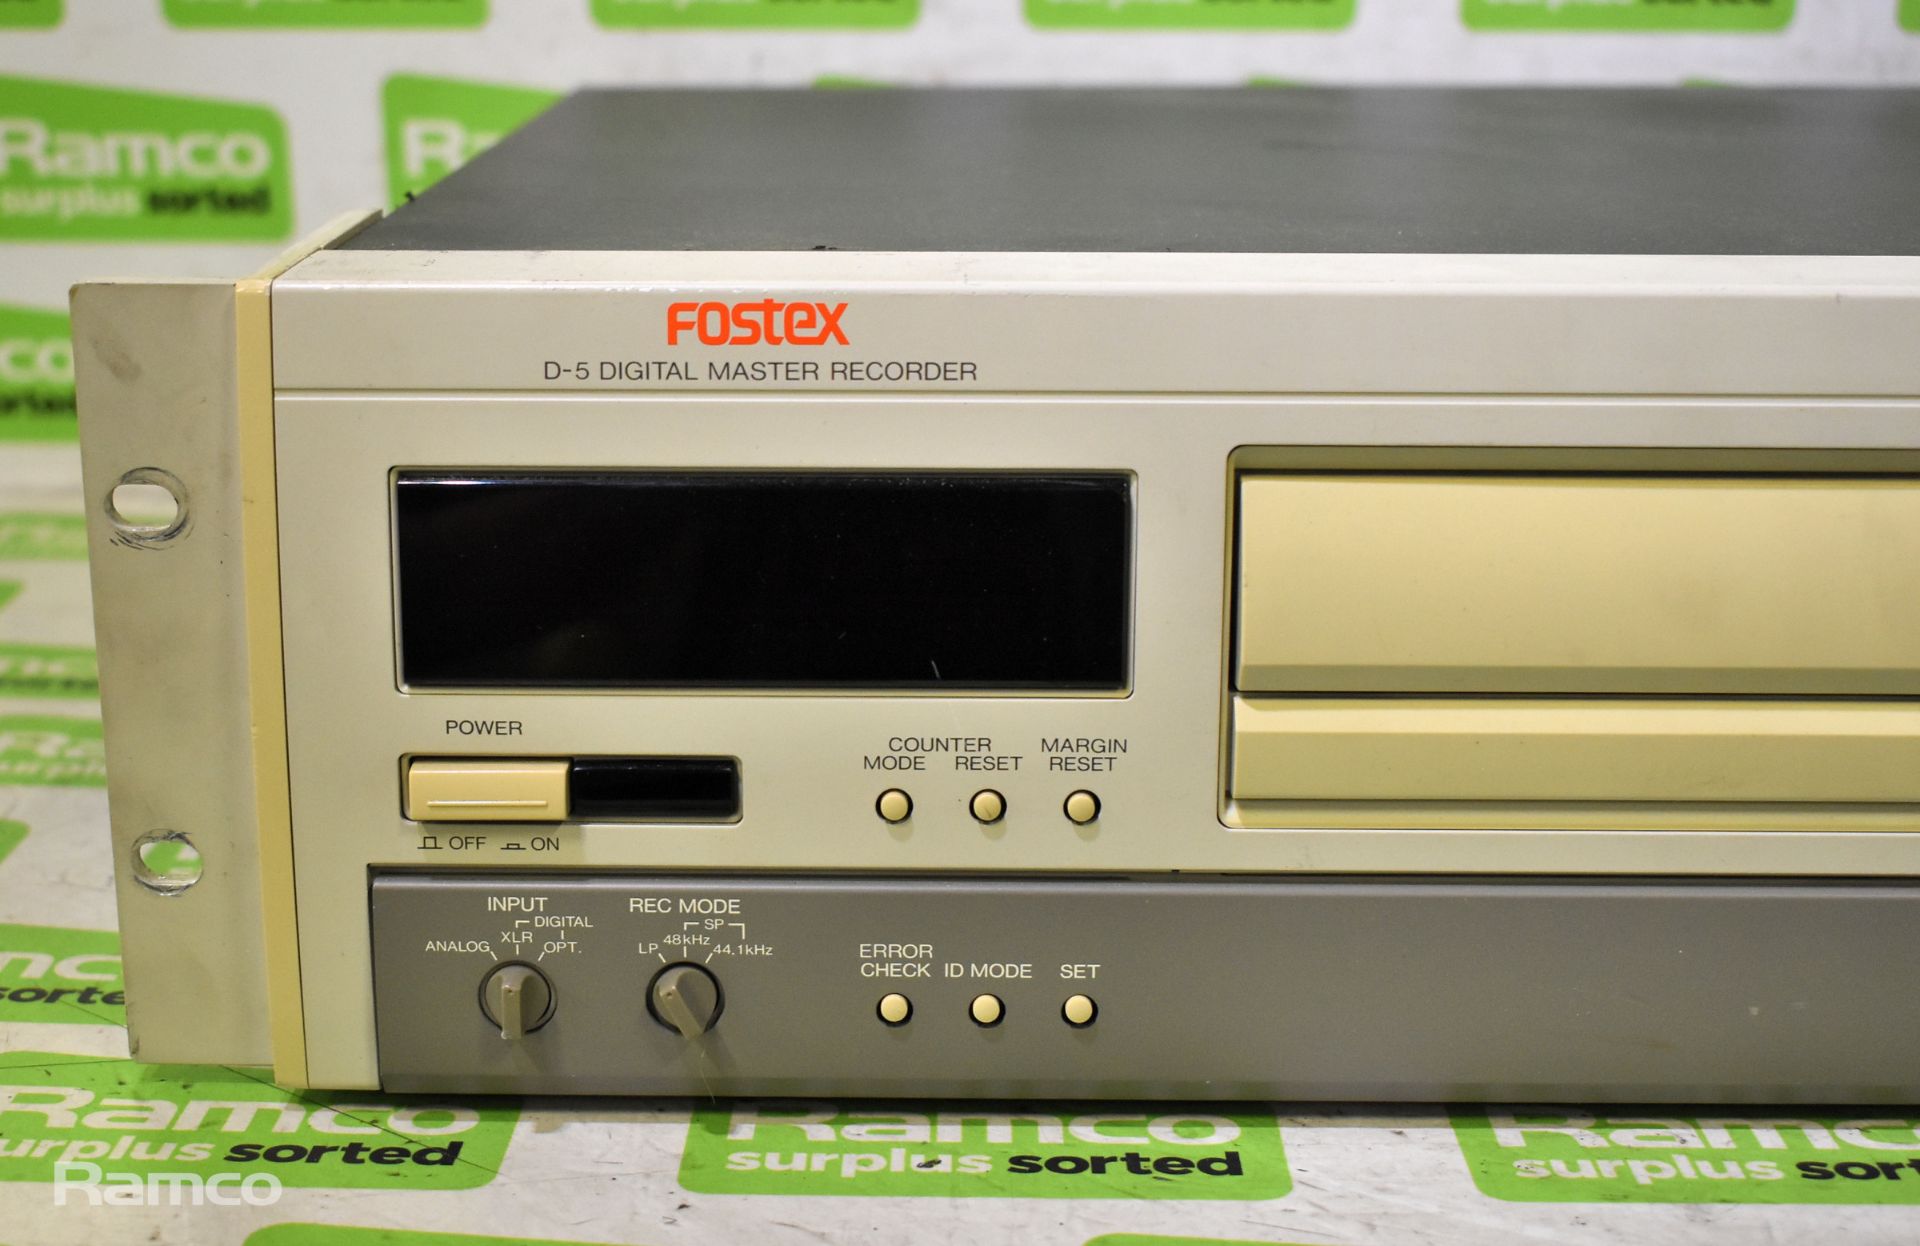 Fostex D-5 digital master recorder - L 485 x W 370 x H 120mm - Image 2 of 6